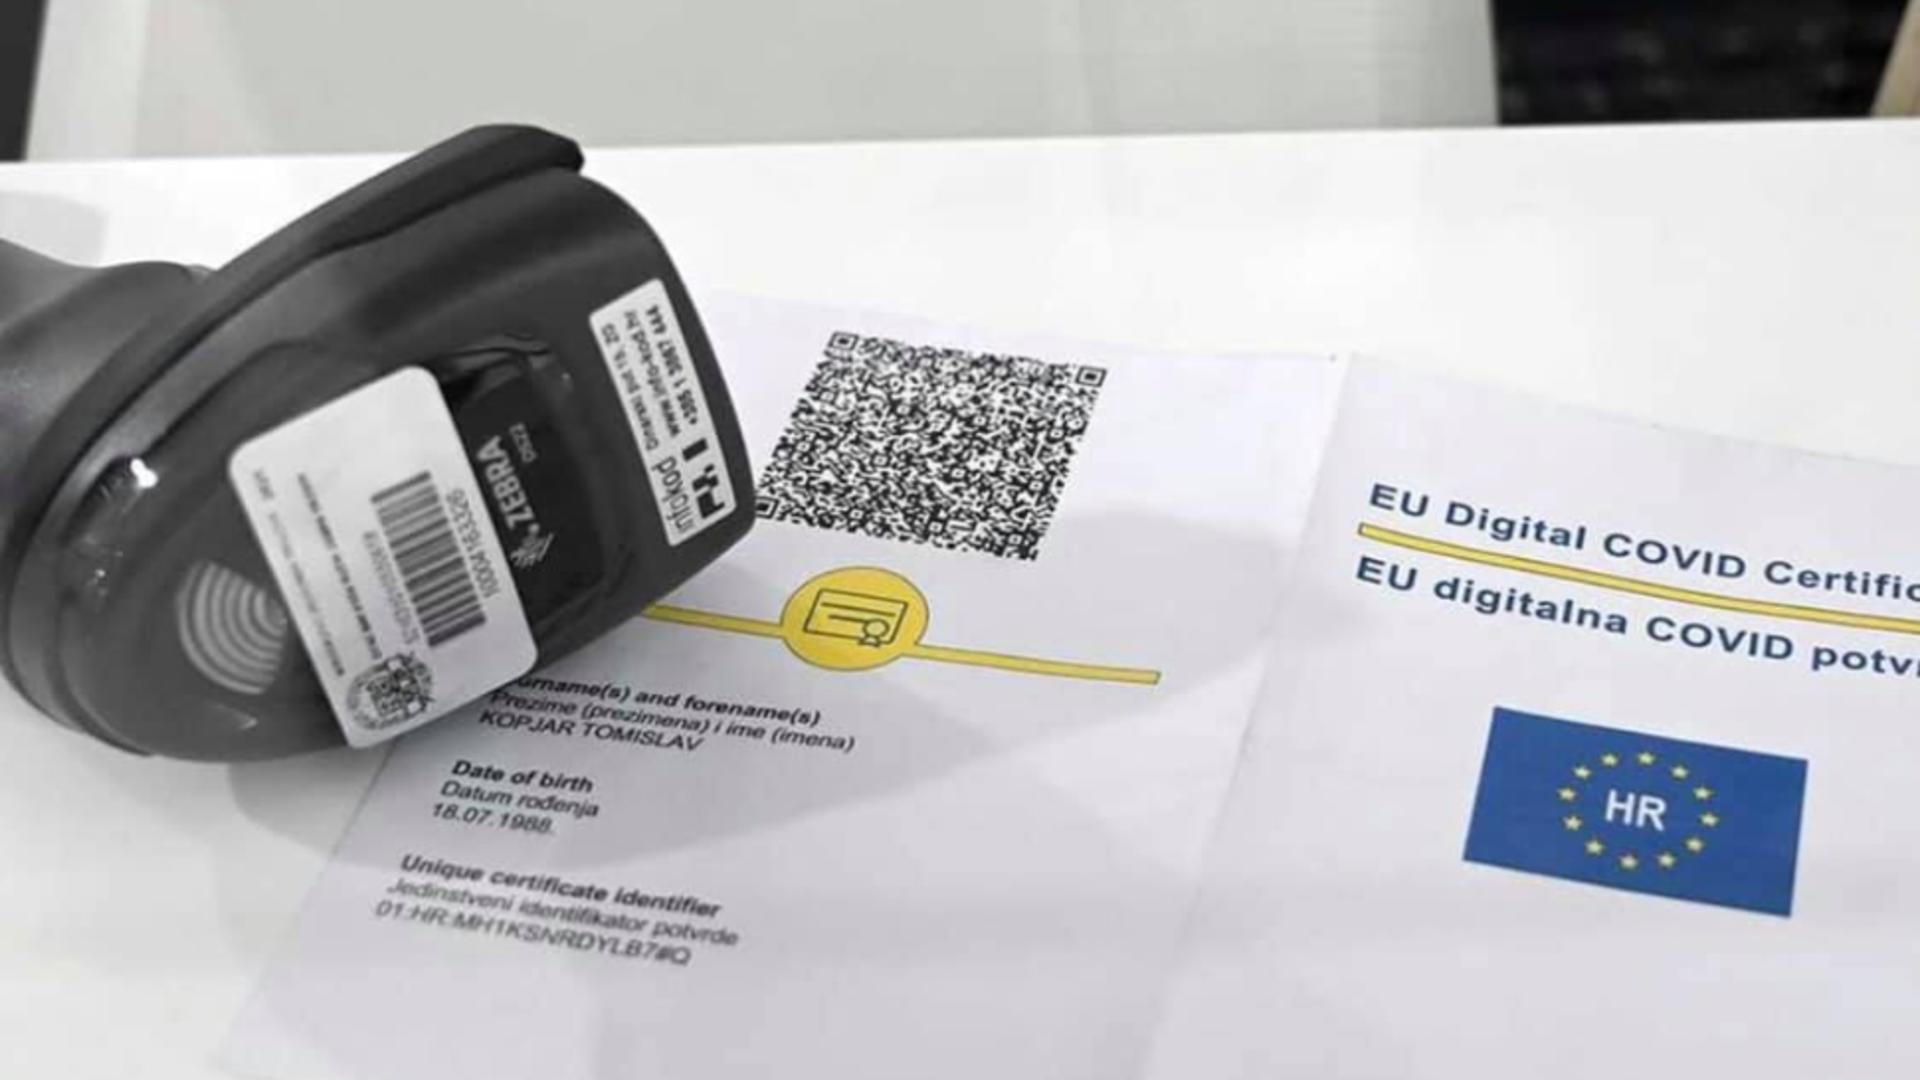 CUM obții pașaportul COVID-19 - 8 PAȘI pentru certificatul digital